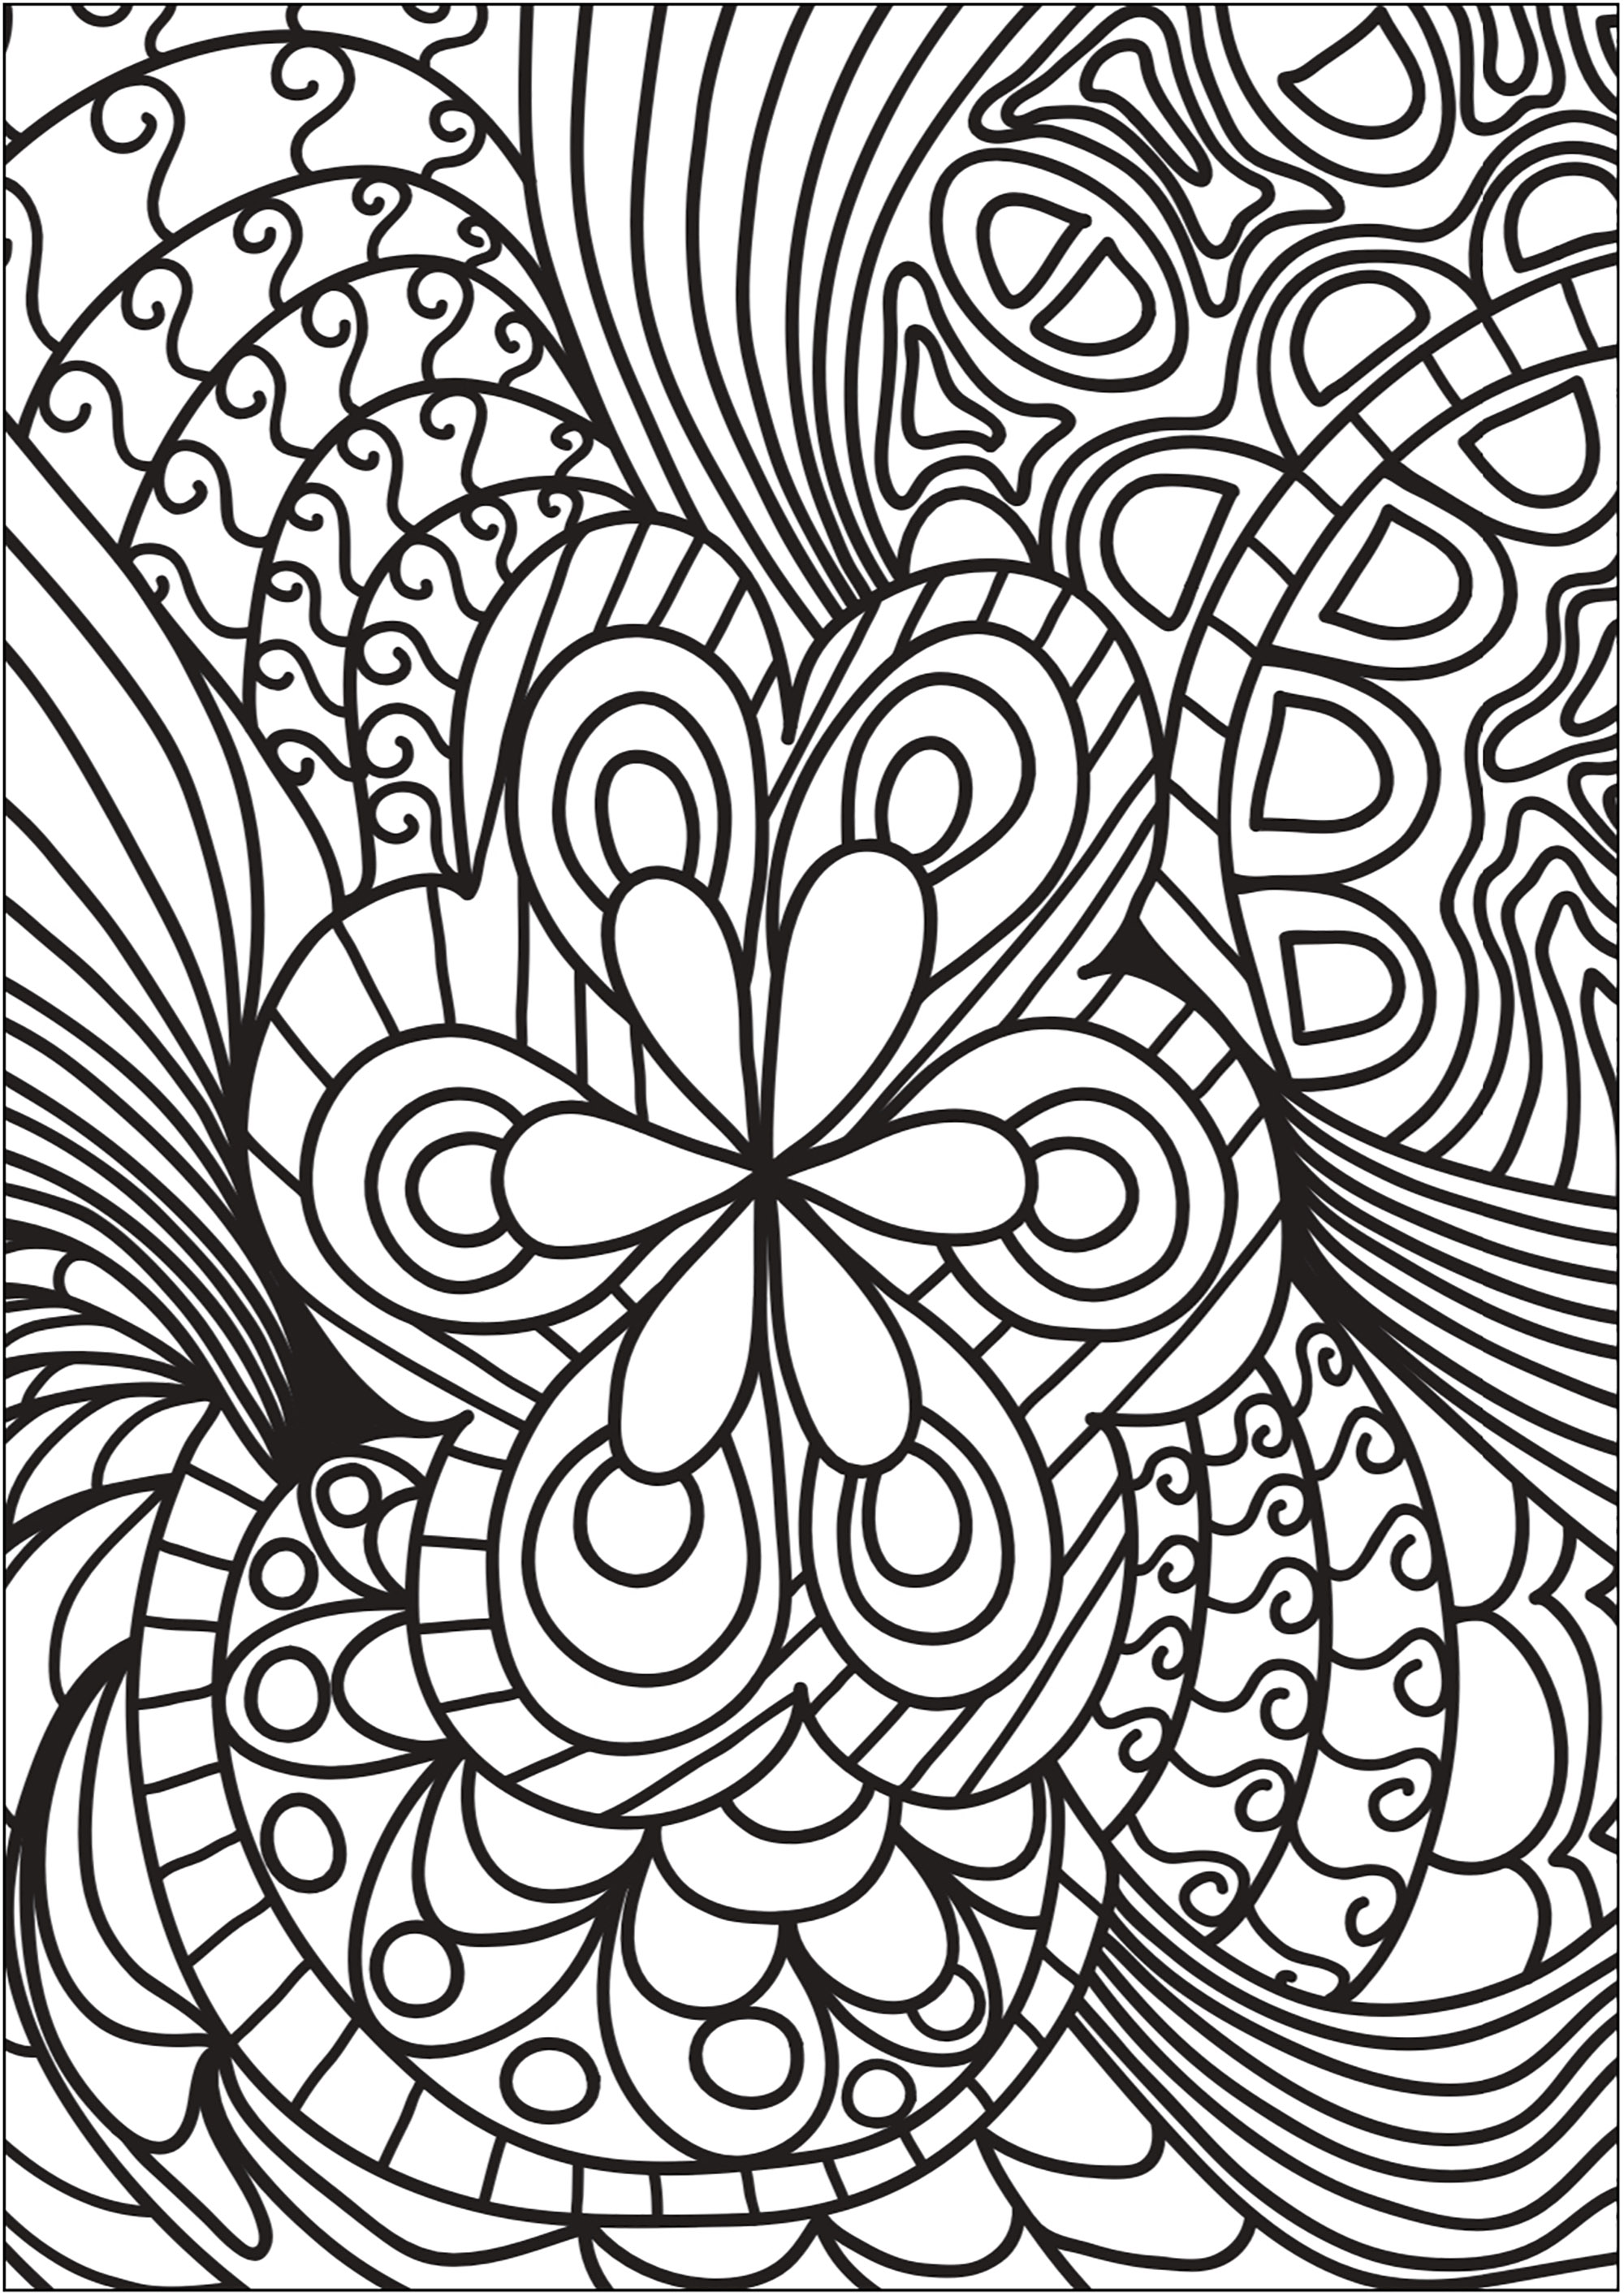 Lindo Doodle com flor central e formas circundantes. Comece por colorir a flor e depois deixe-se levar por um turbilhão de formas e cores.